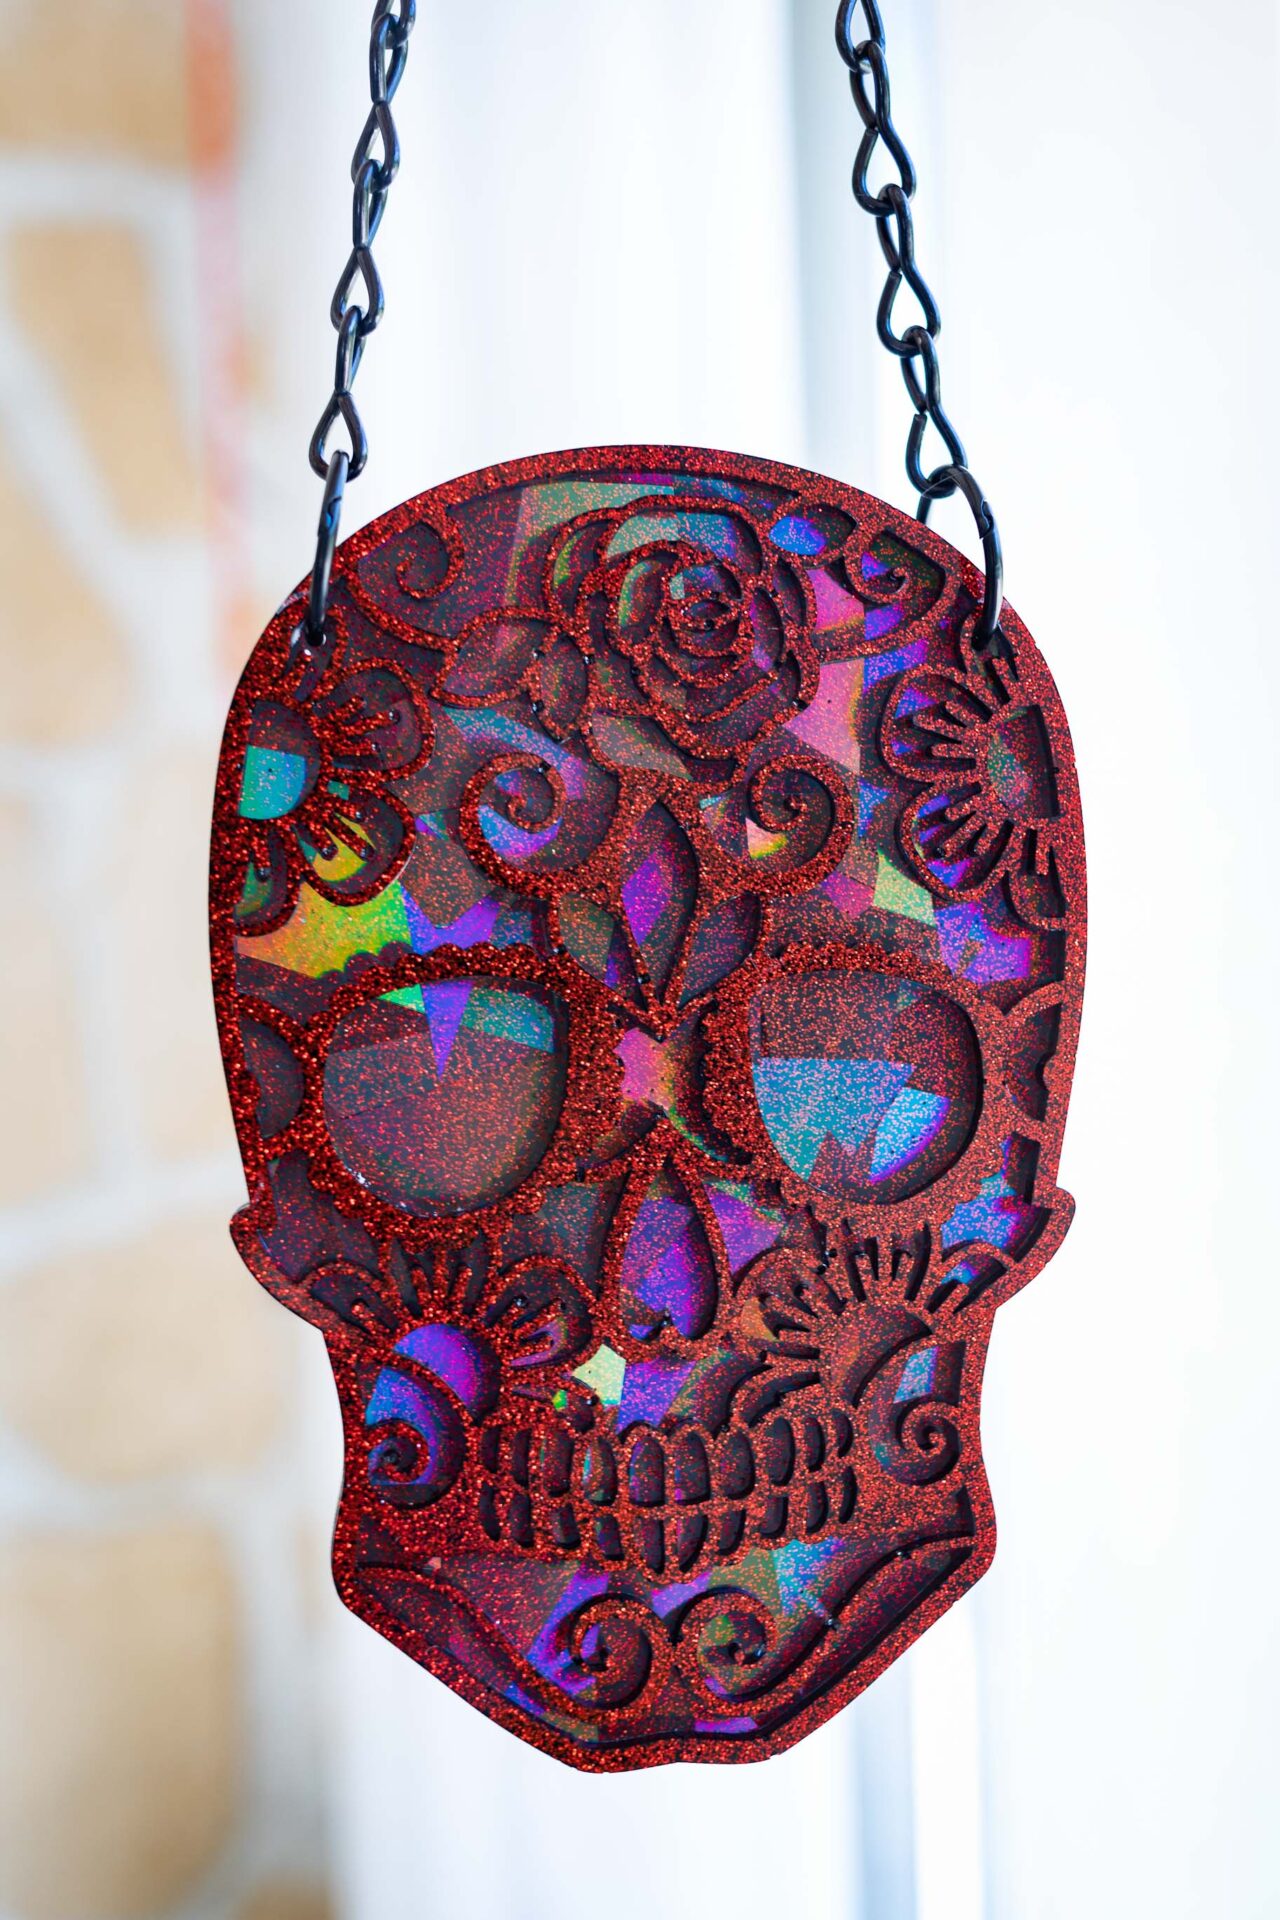 Suspension skull crâne holographique - Rouge paillette - Boutique en ligne d'idées cadeau et de décoration pour la fête des mères ou pour un anniversaire